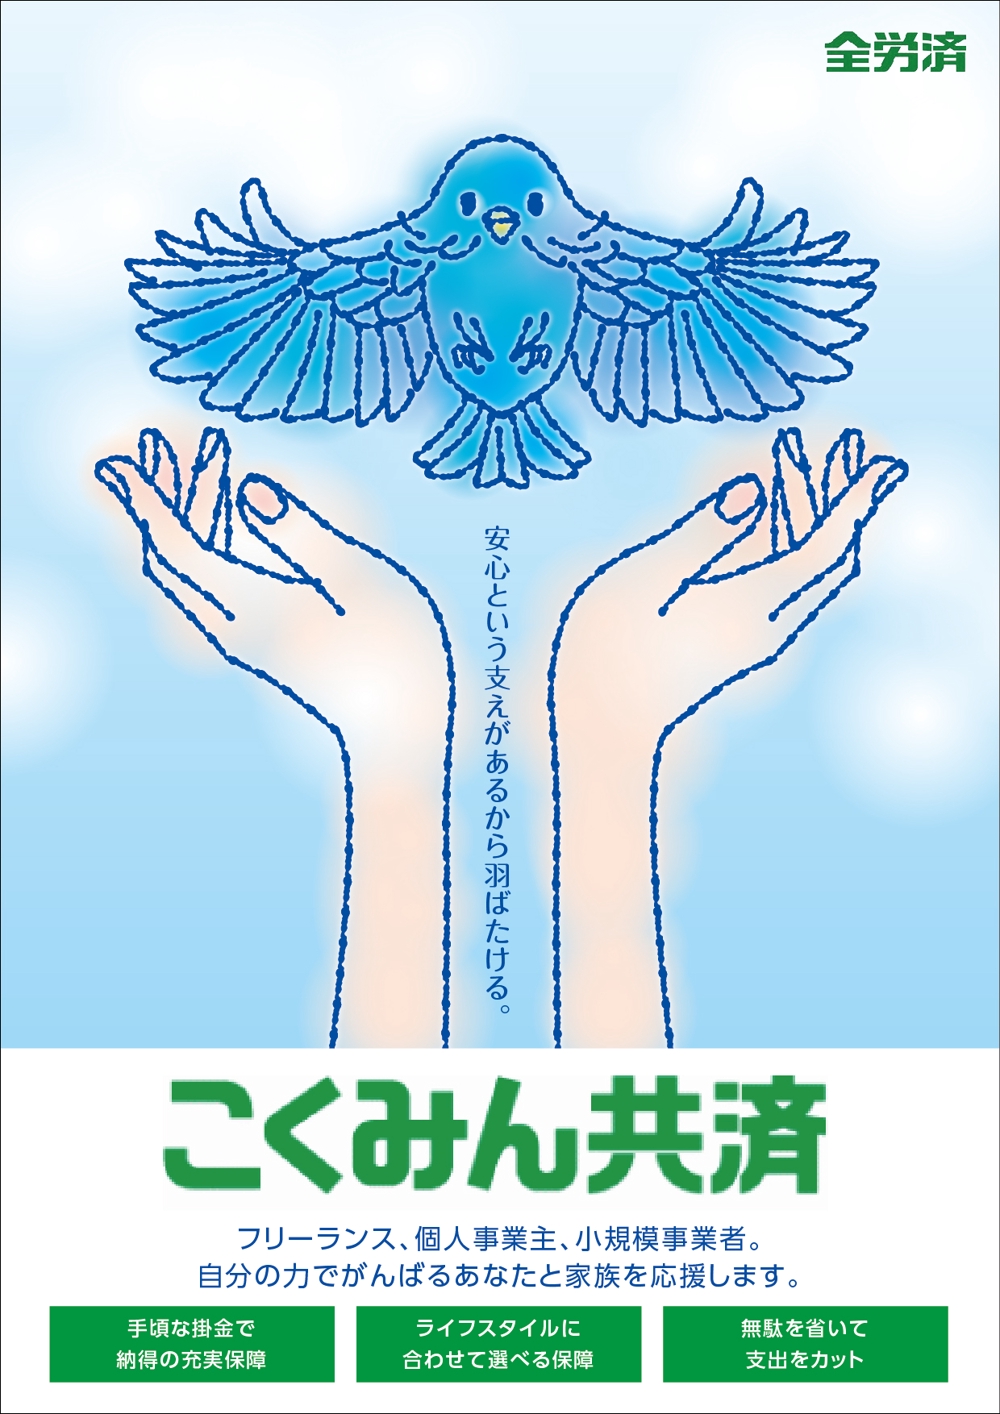 こくみん共済ポスター-01.jpg